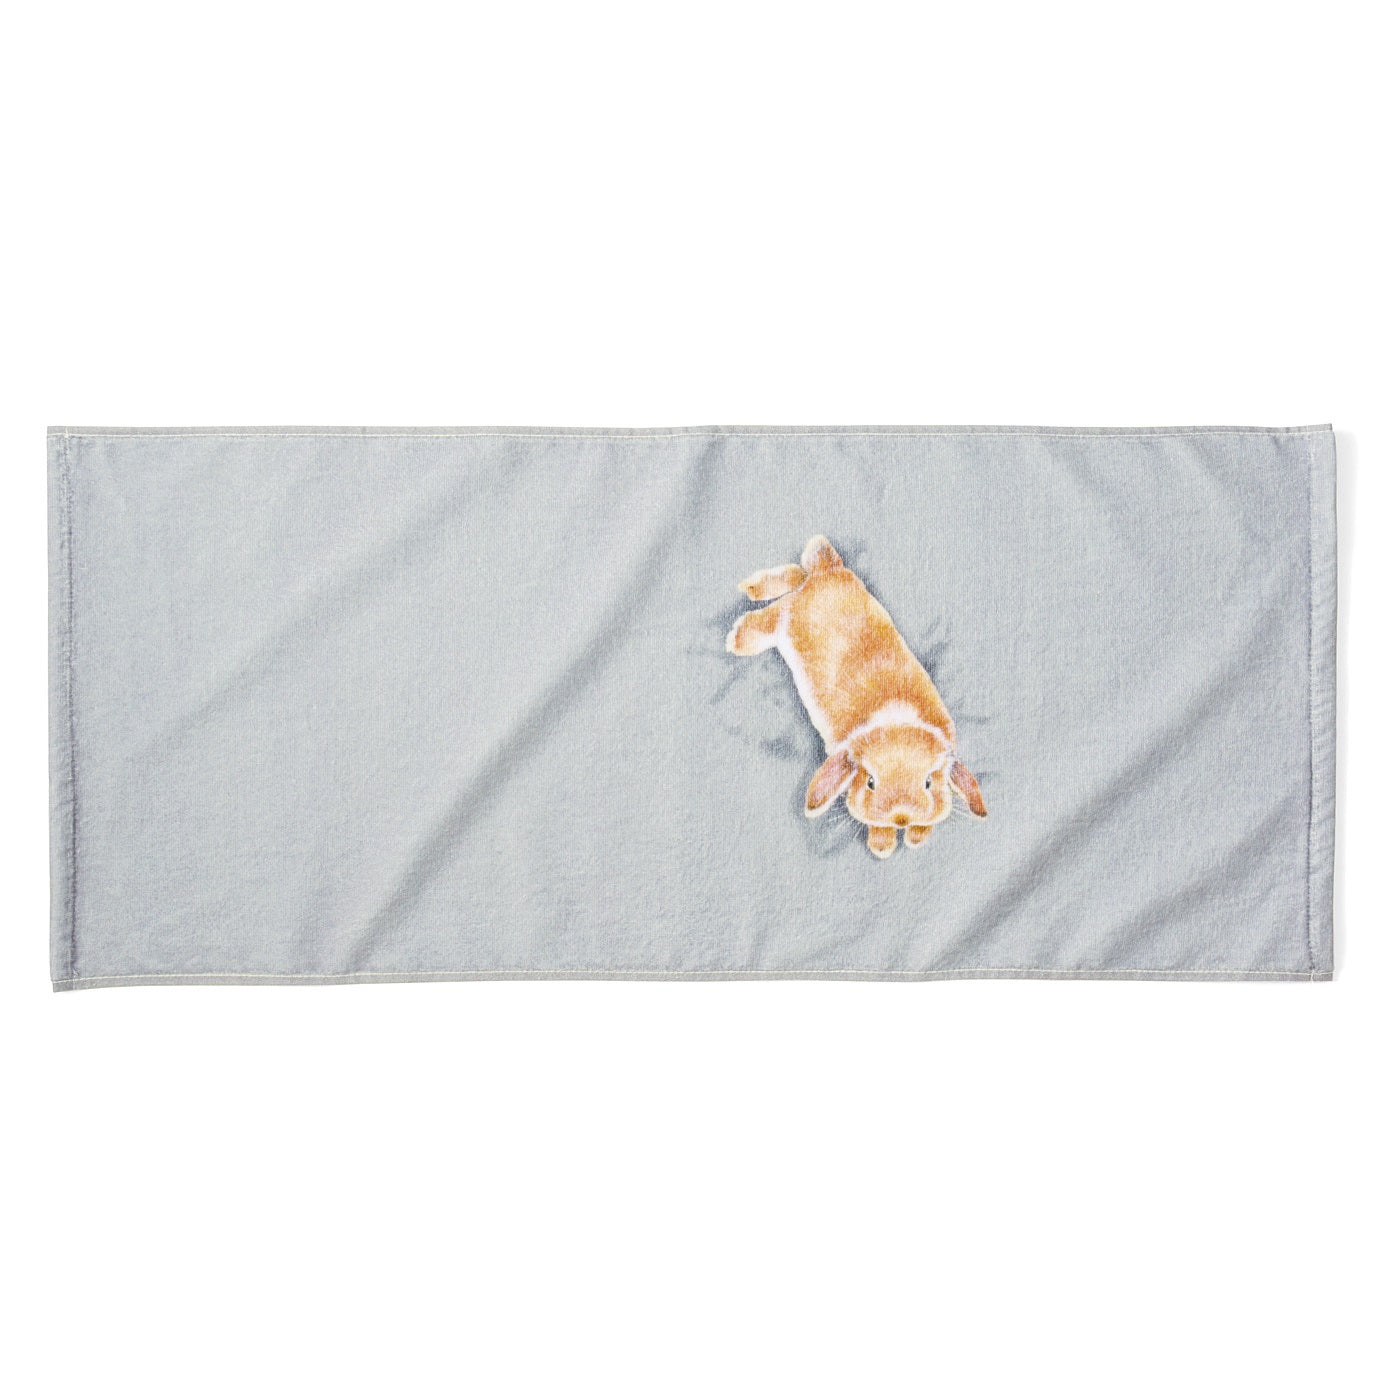 【預購】日本進口 YOU + MORE! 睡著兔仔枕頭毛巾 - Cnjpkitchen ❤️ 🇯🇵日本廚具 家居生活雜貨店